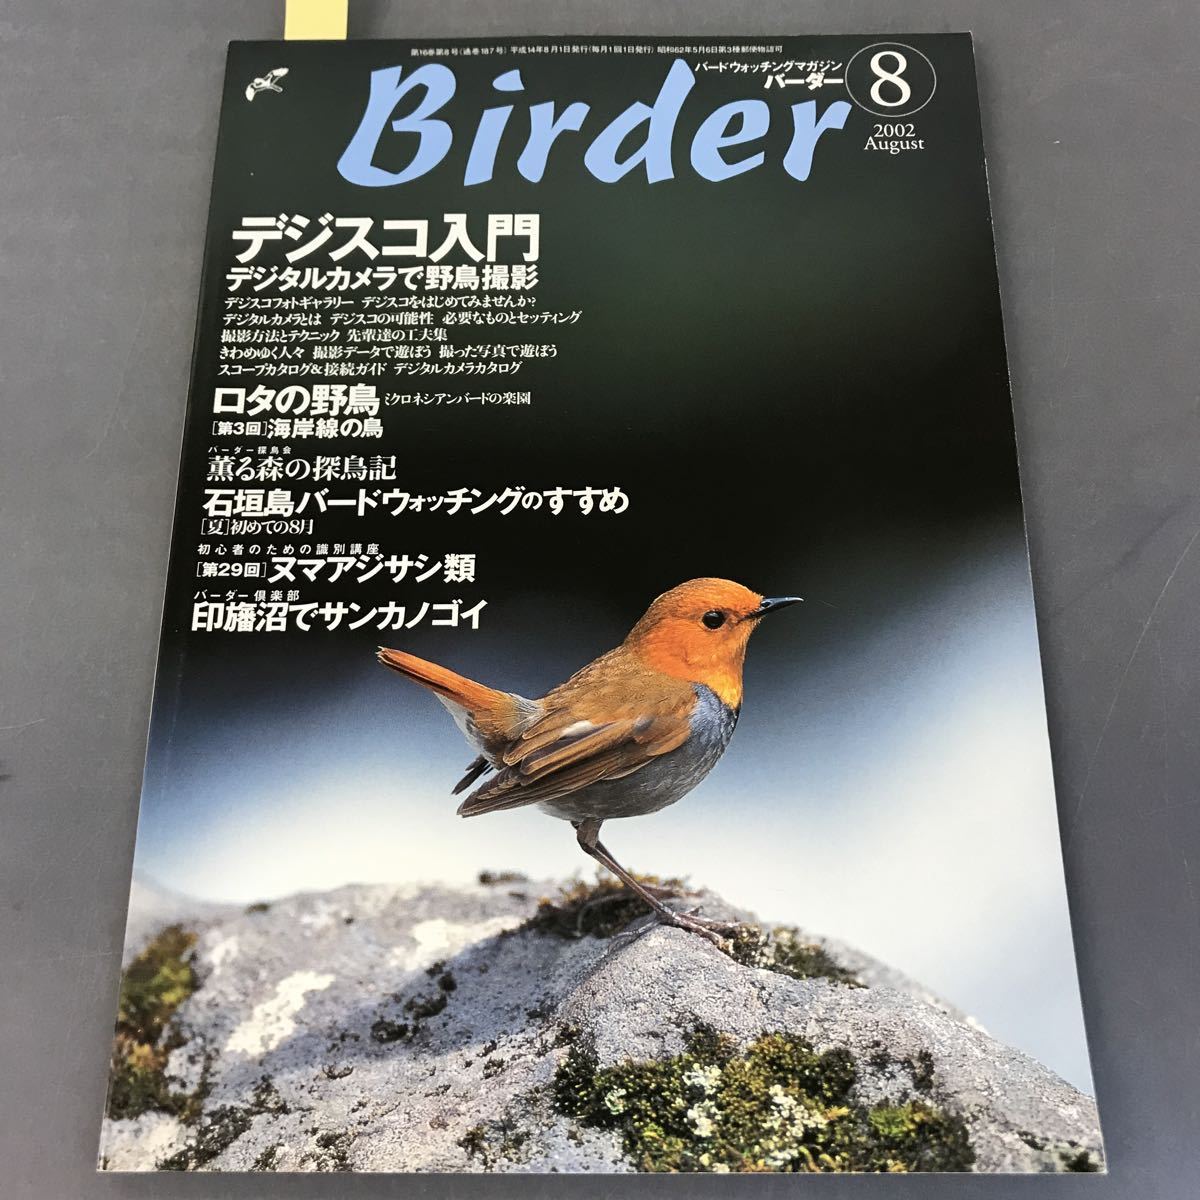 注目ブランド 2002 August Birder A12-126 8 文一総合出版 特集